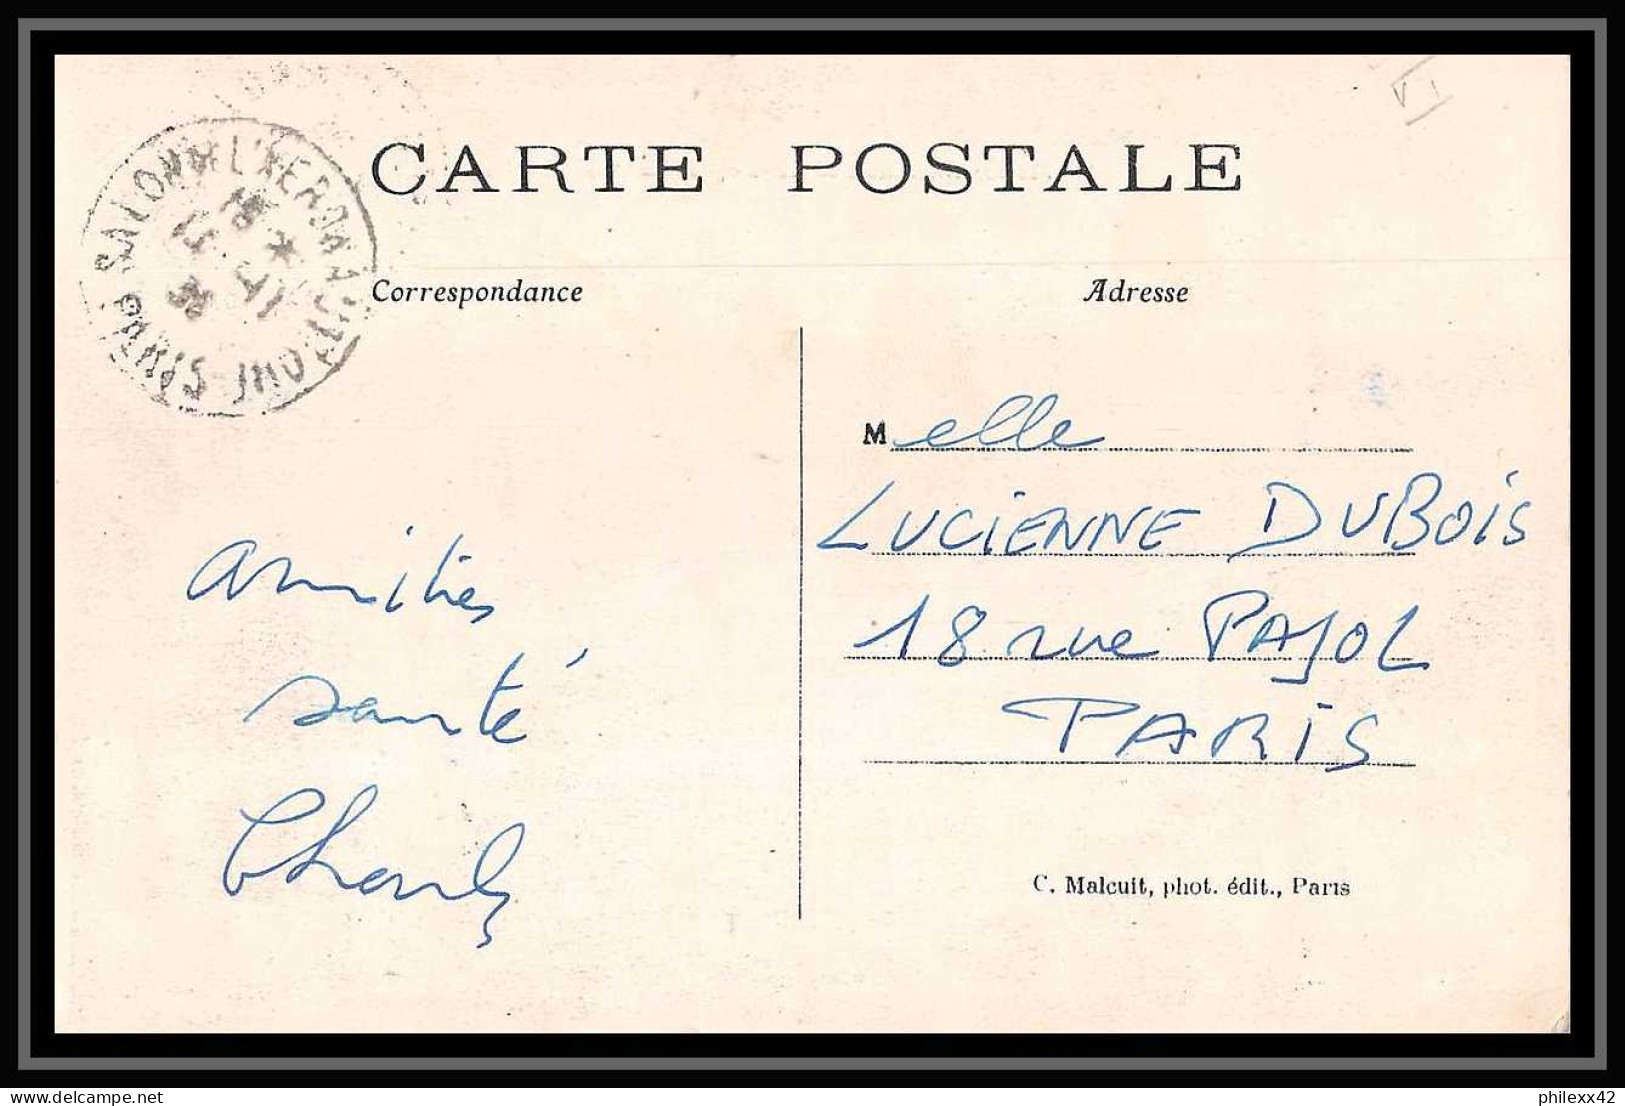 41868 Paris1936 Semeuse Piquaga à Cheval Antoinette 3 France Aviation Poste Aérienne Airmail Carte Postale (postcard) - Cartas & Documentos